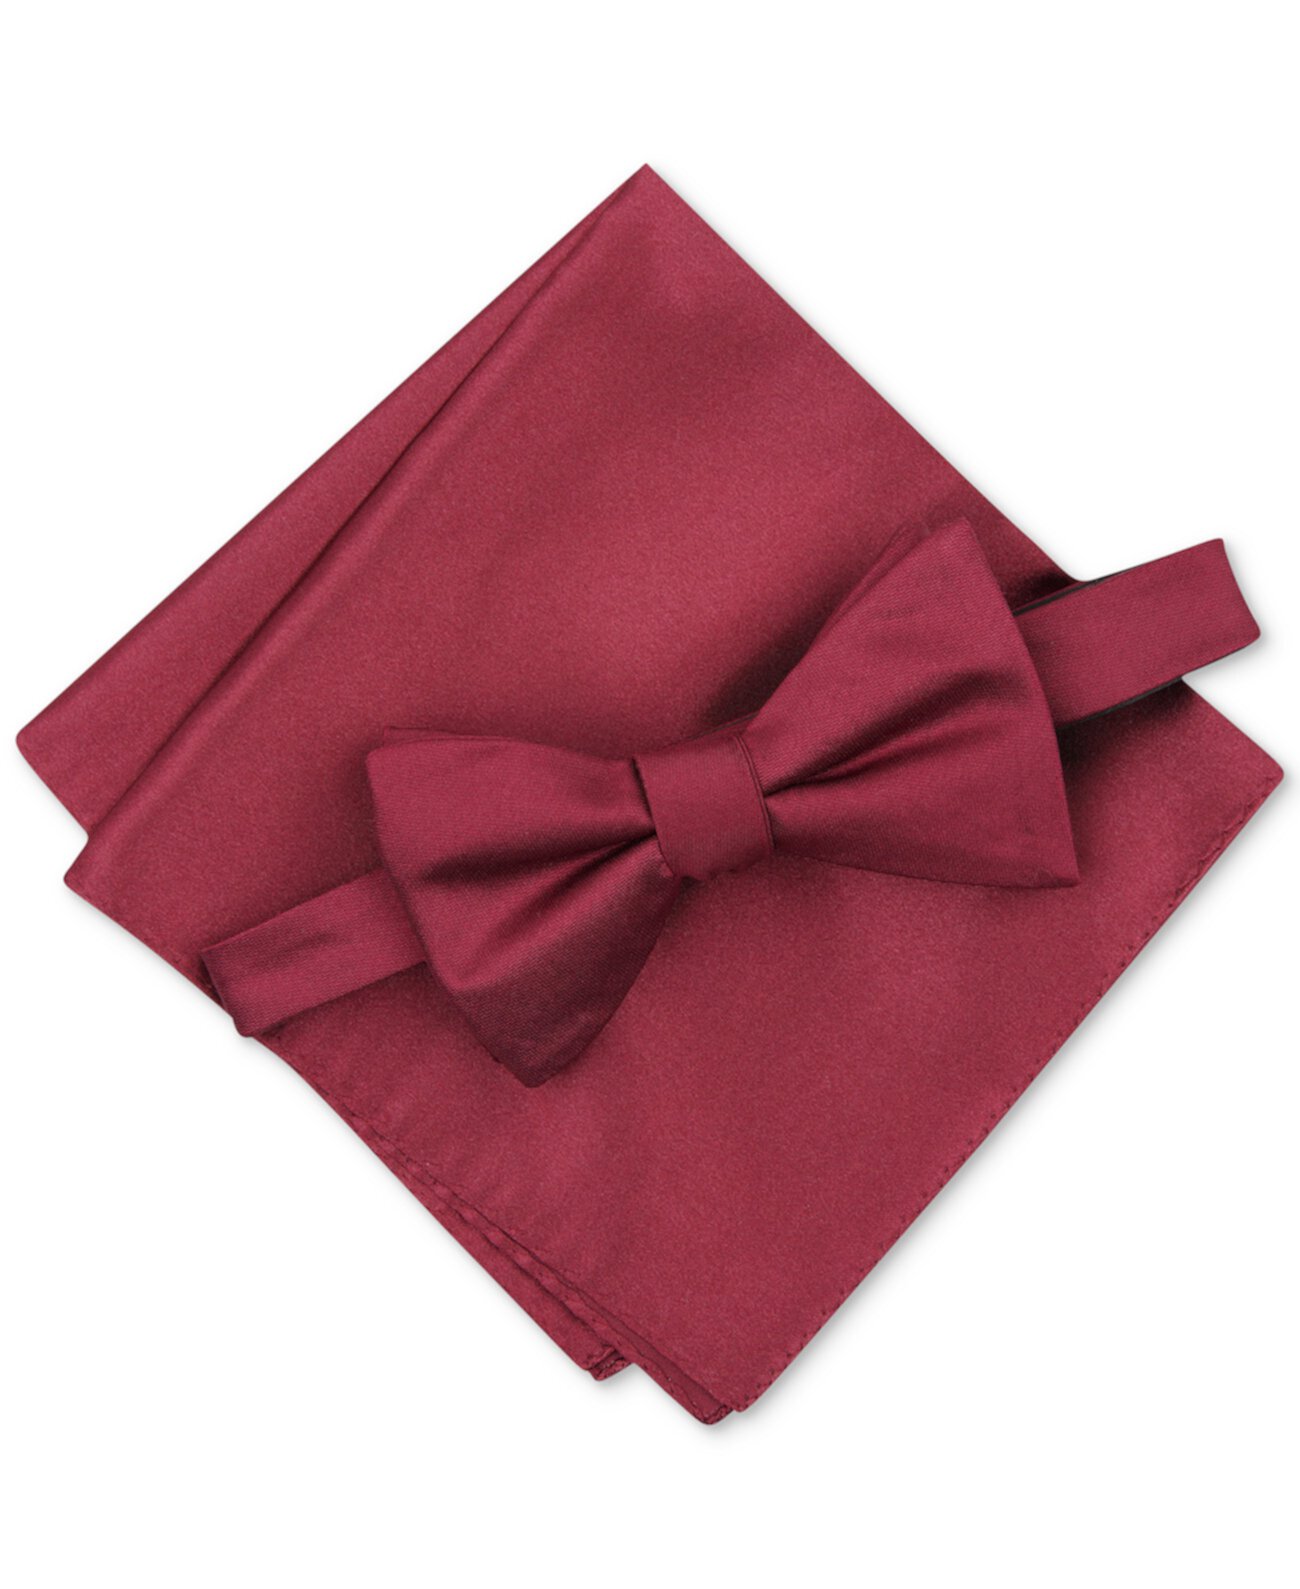 Мужской сплошной текстурированный галстук-бабочка и сплошной фактурный набор для кармана, созданный для Macy's Alfani